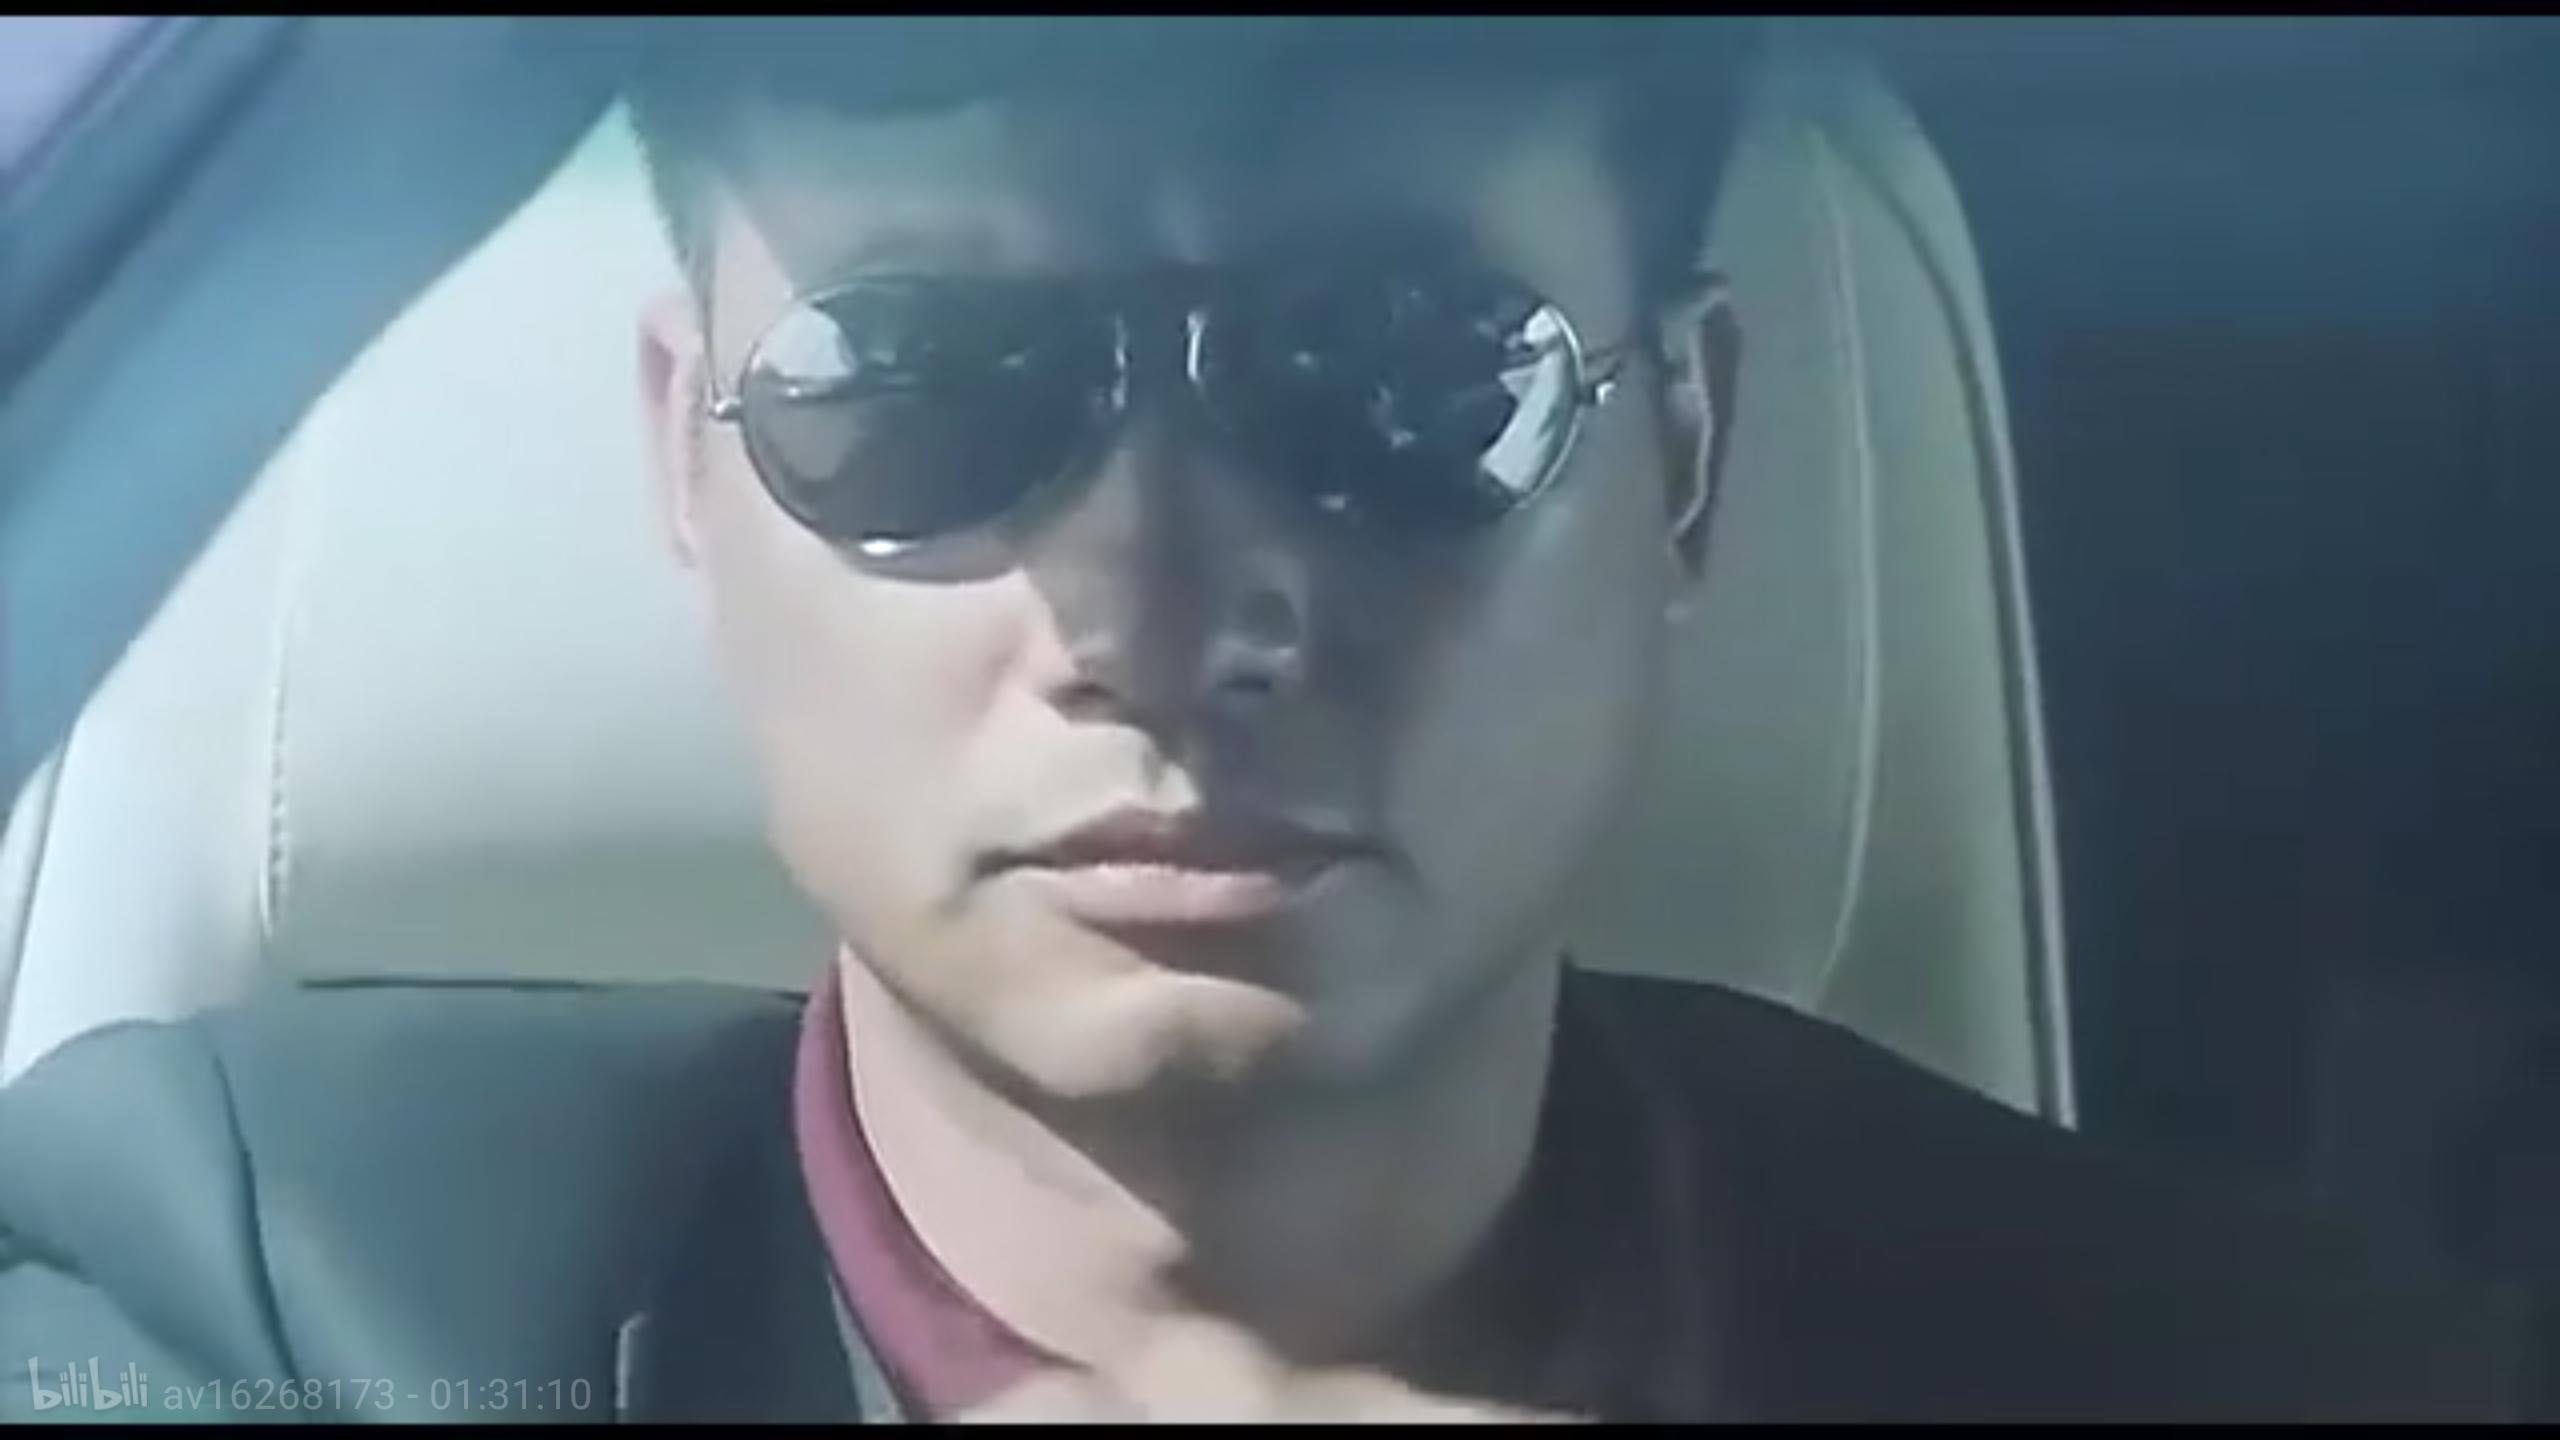 Ho kong fung wan (1998) Screenshot 2 